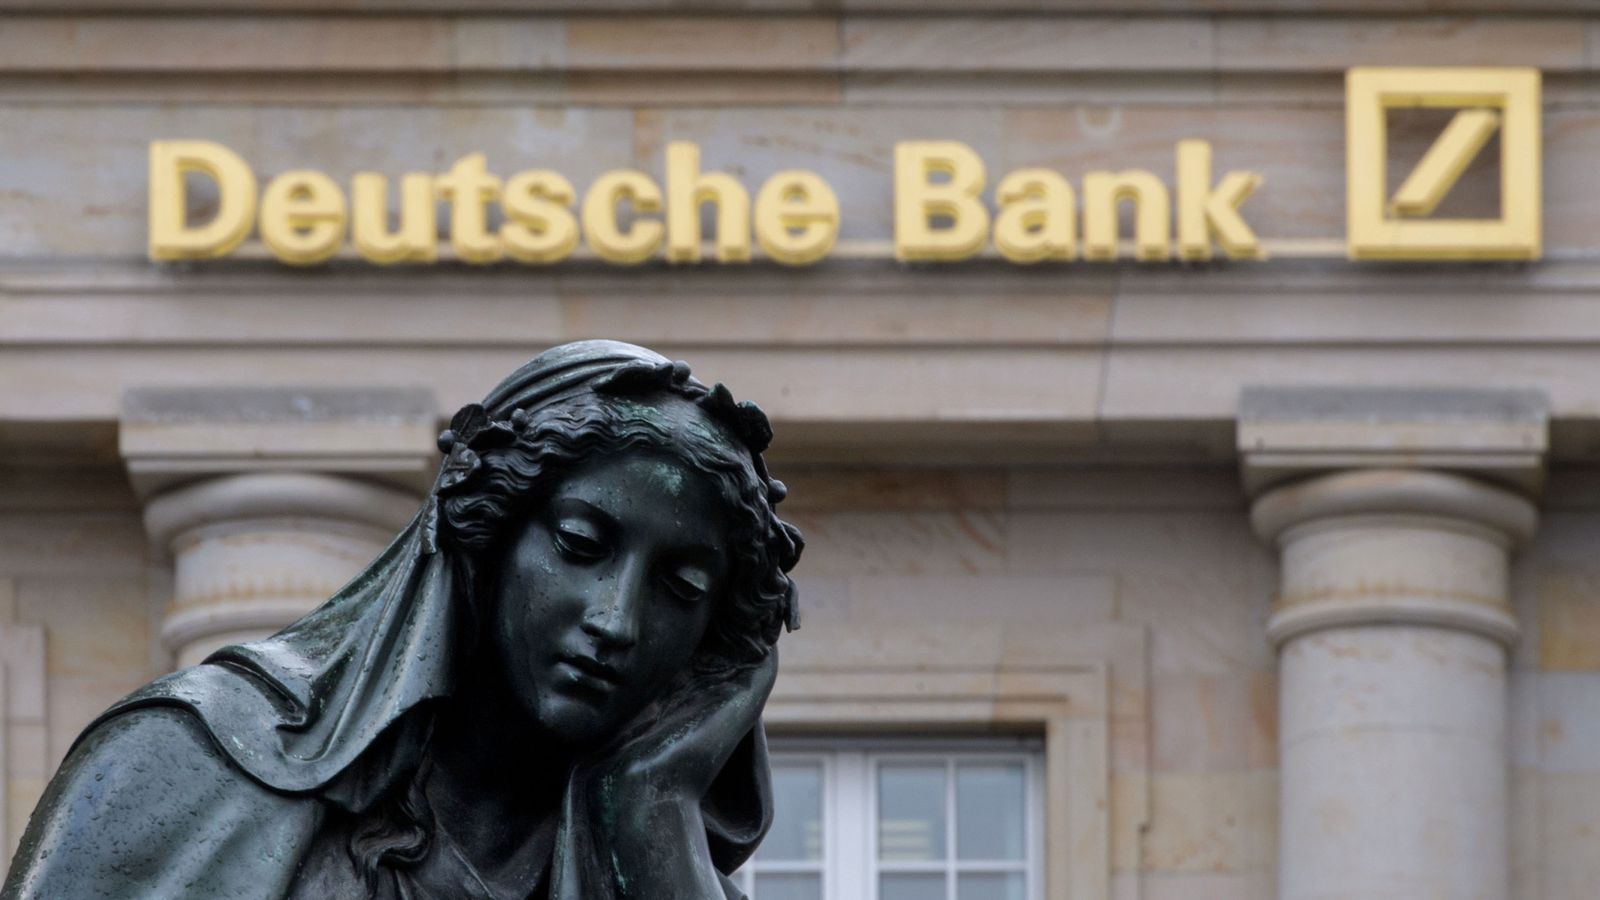 Deutsche Bank raided in $1tn greenwashing inquiry – Welcome Qatar